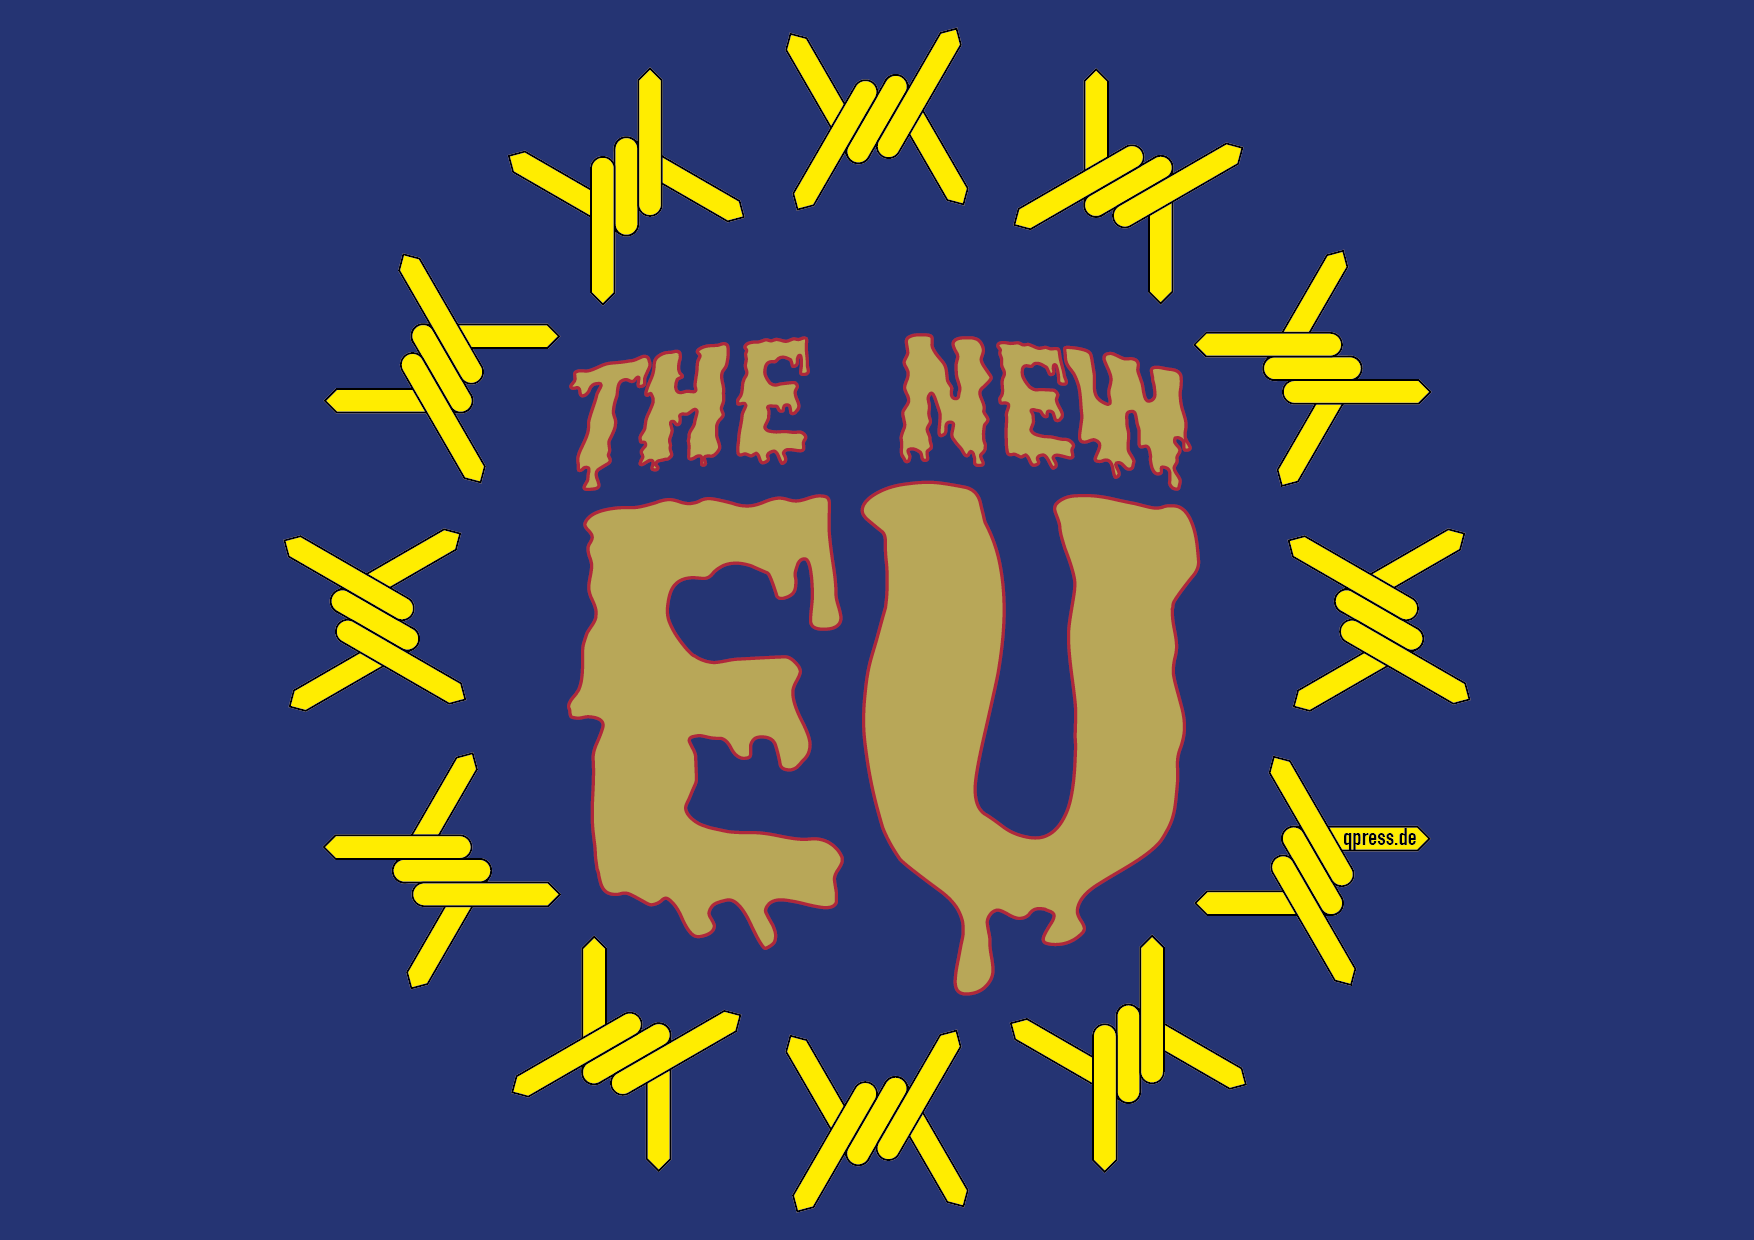 EU Stacheldrahlt Flagge neue Sterne die neue EU the new qpress